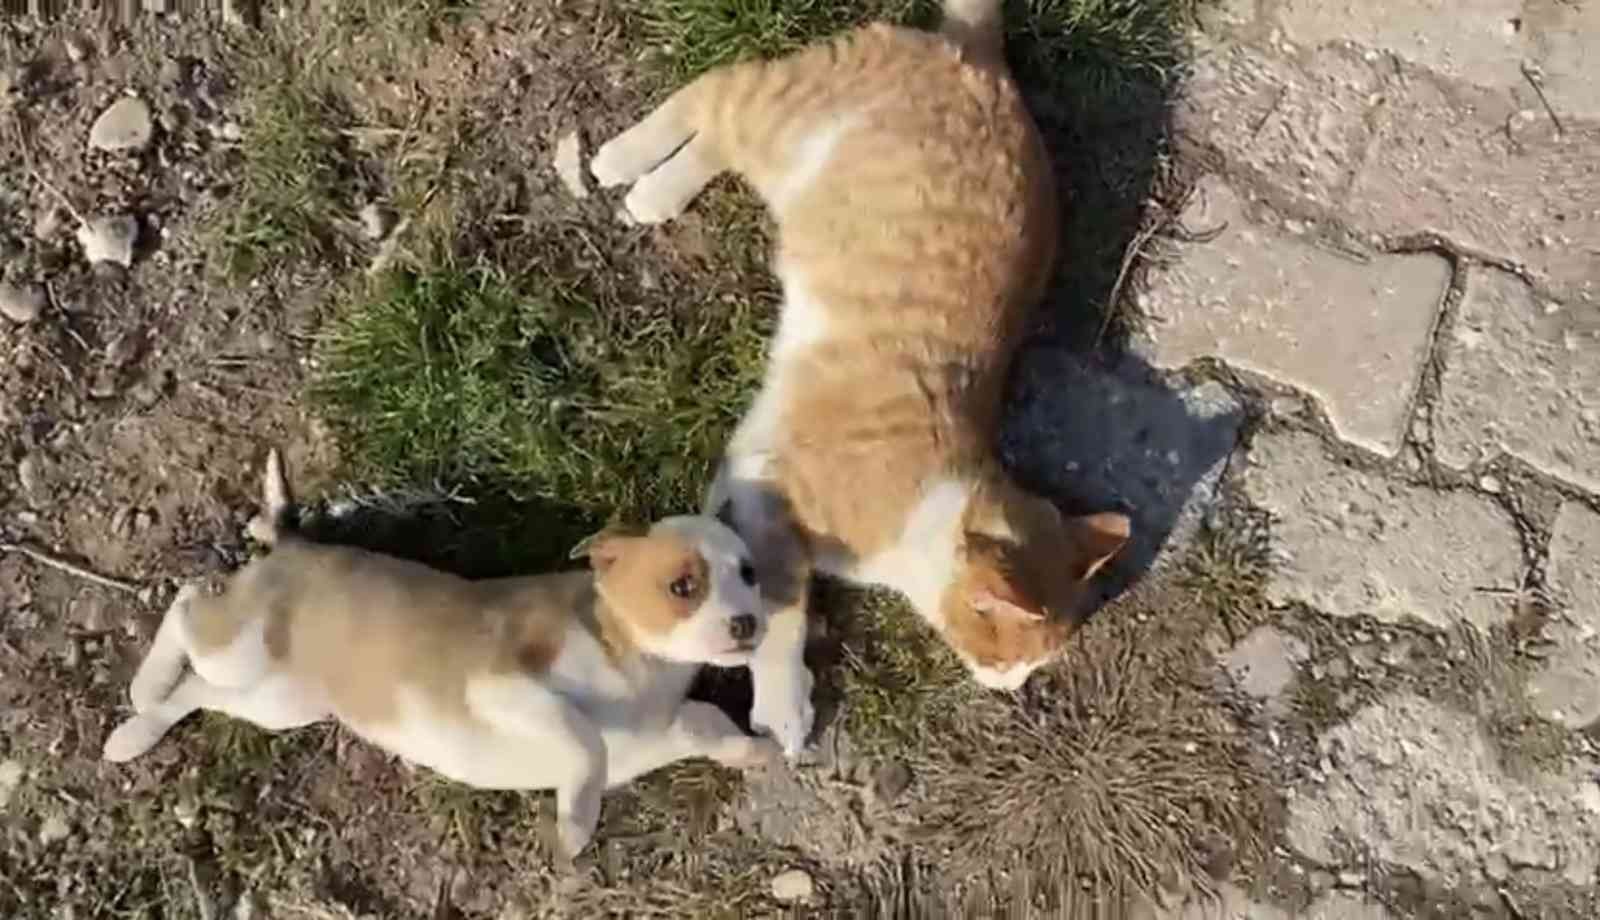 Kedi-köpek dostluğu görenleri şaşırtıyor #amasya